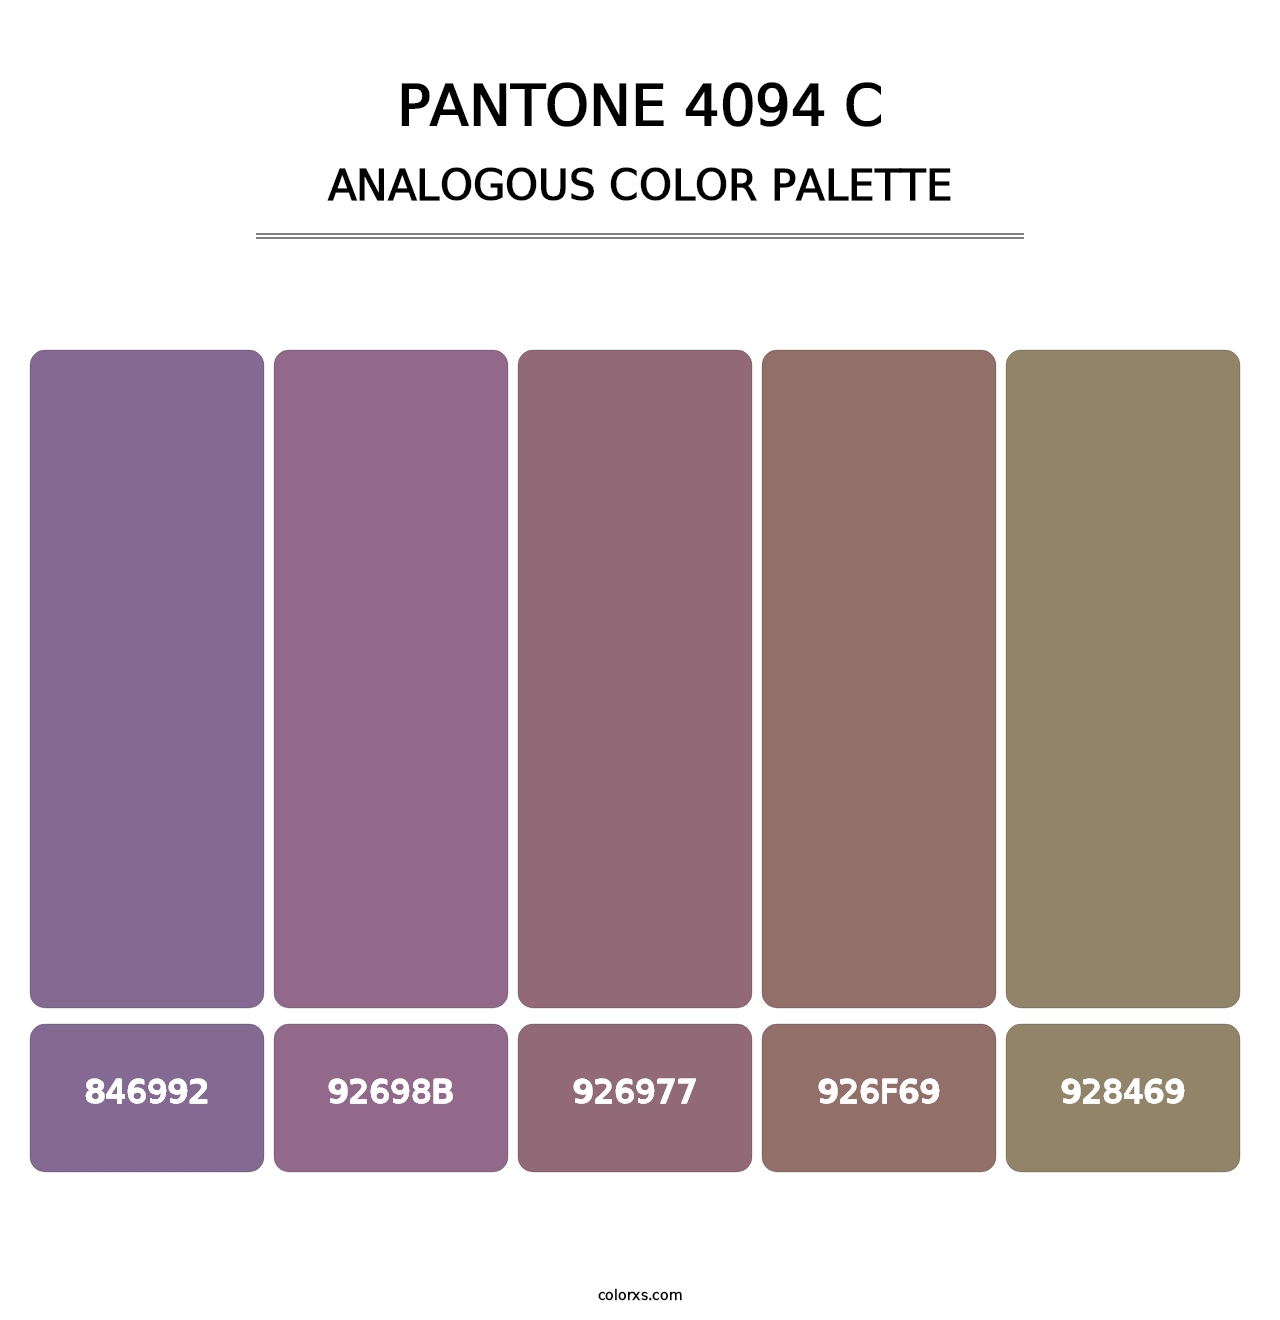 PANTONE 4094 C - Analogous Color Palette